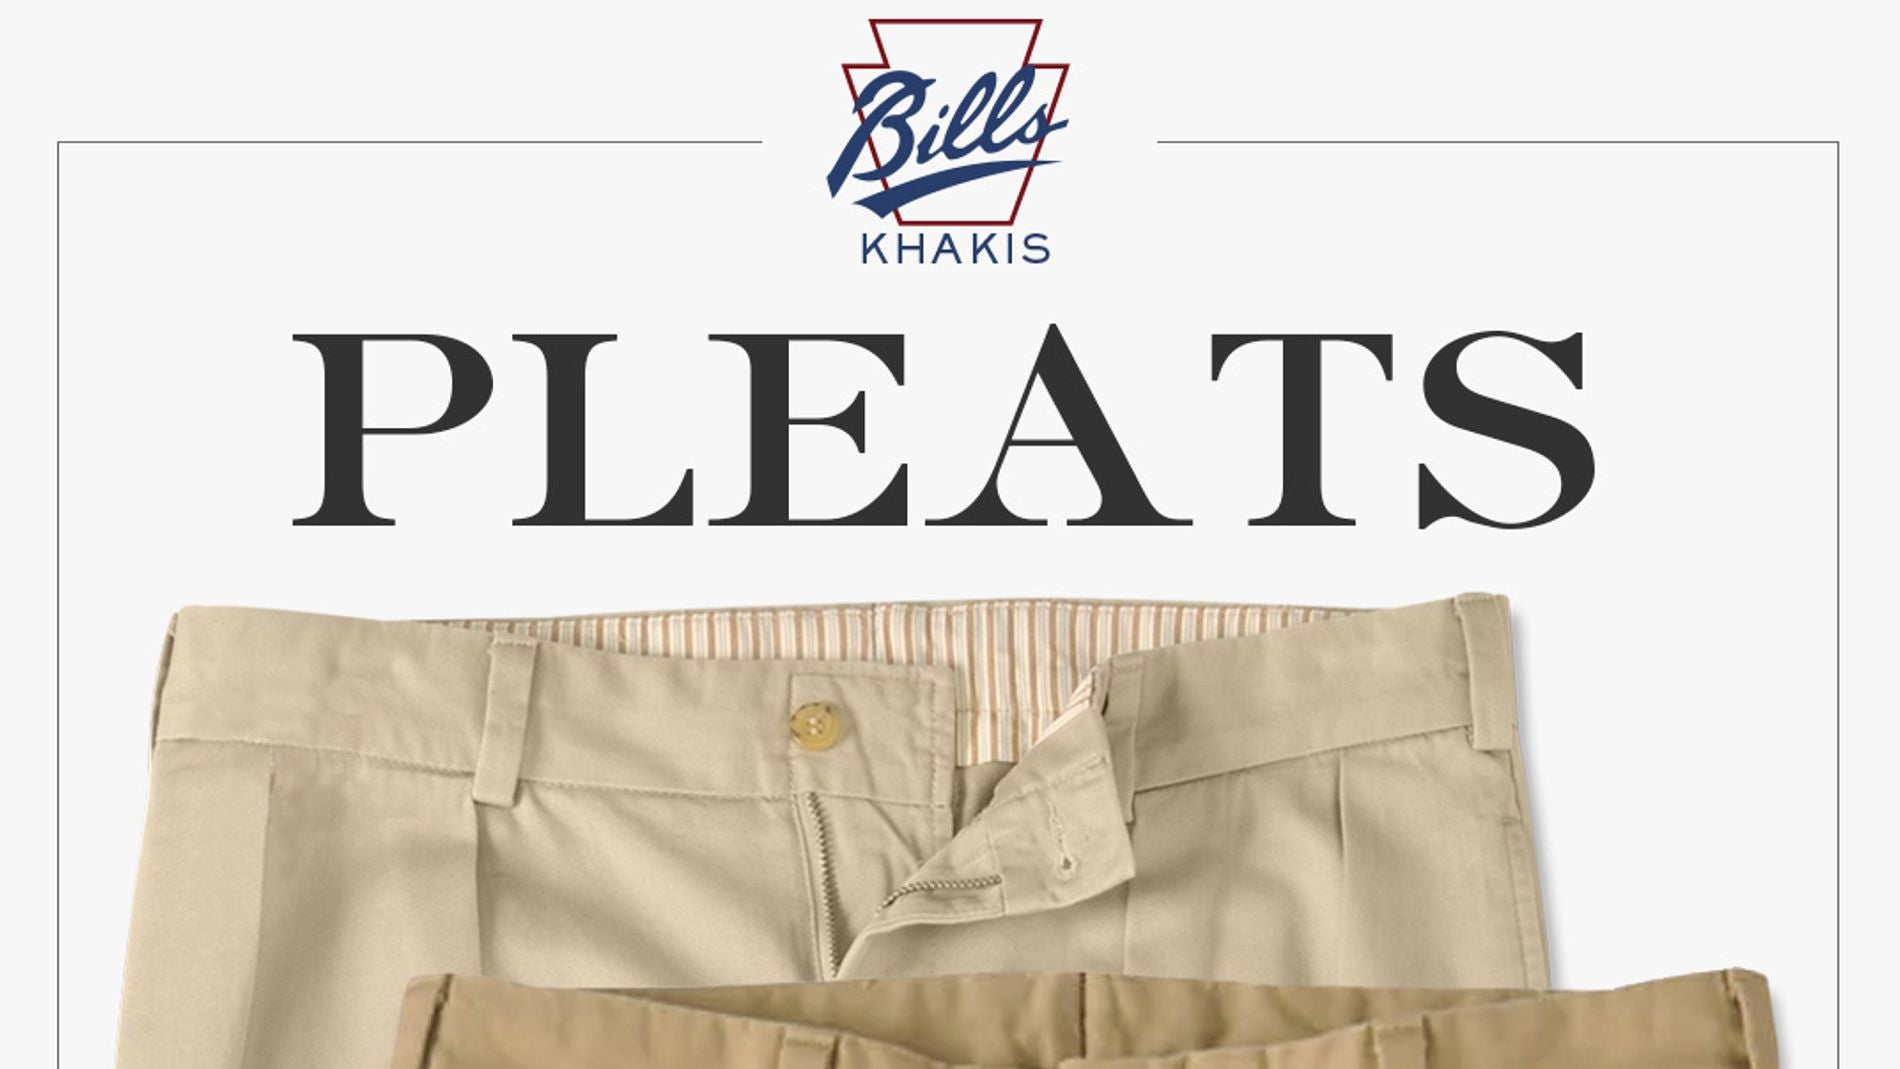 Bills Khakis Pleated Pants